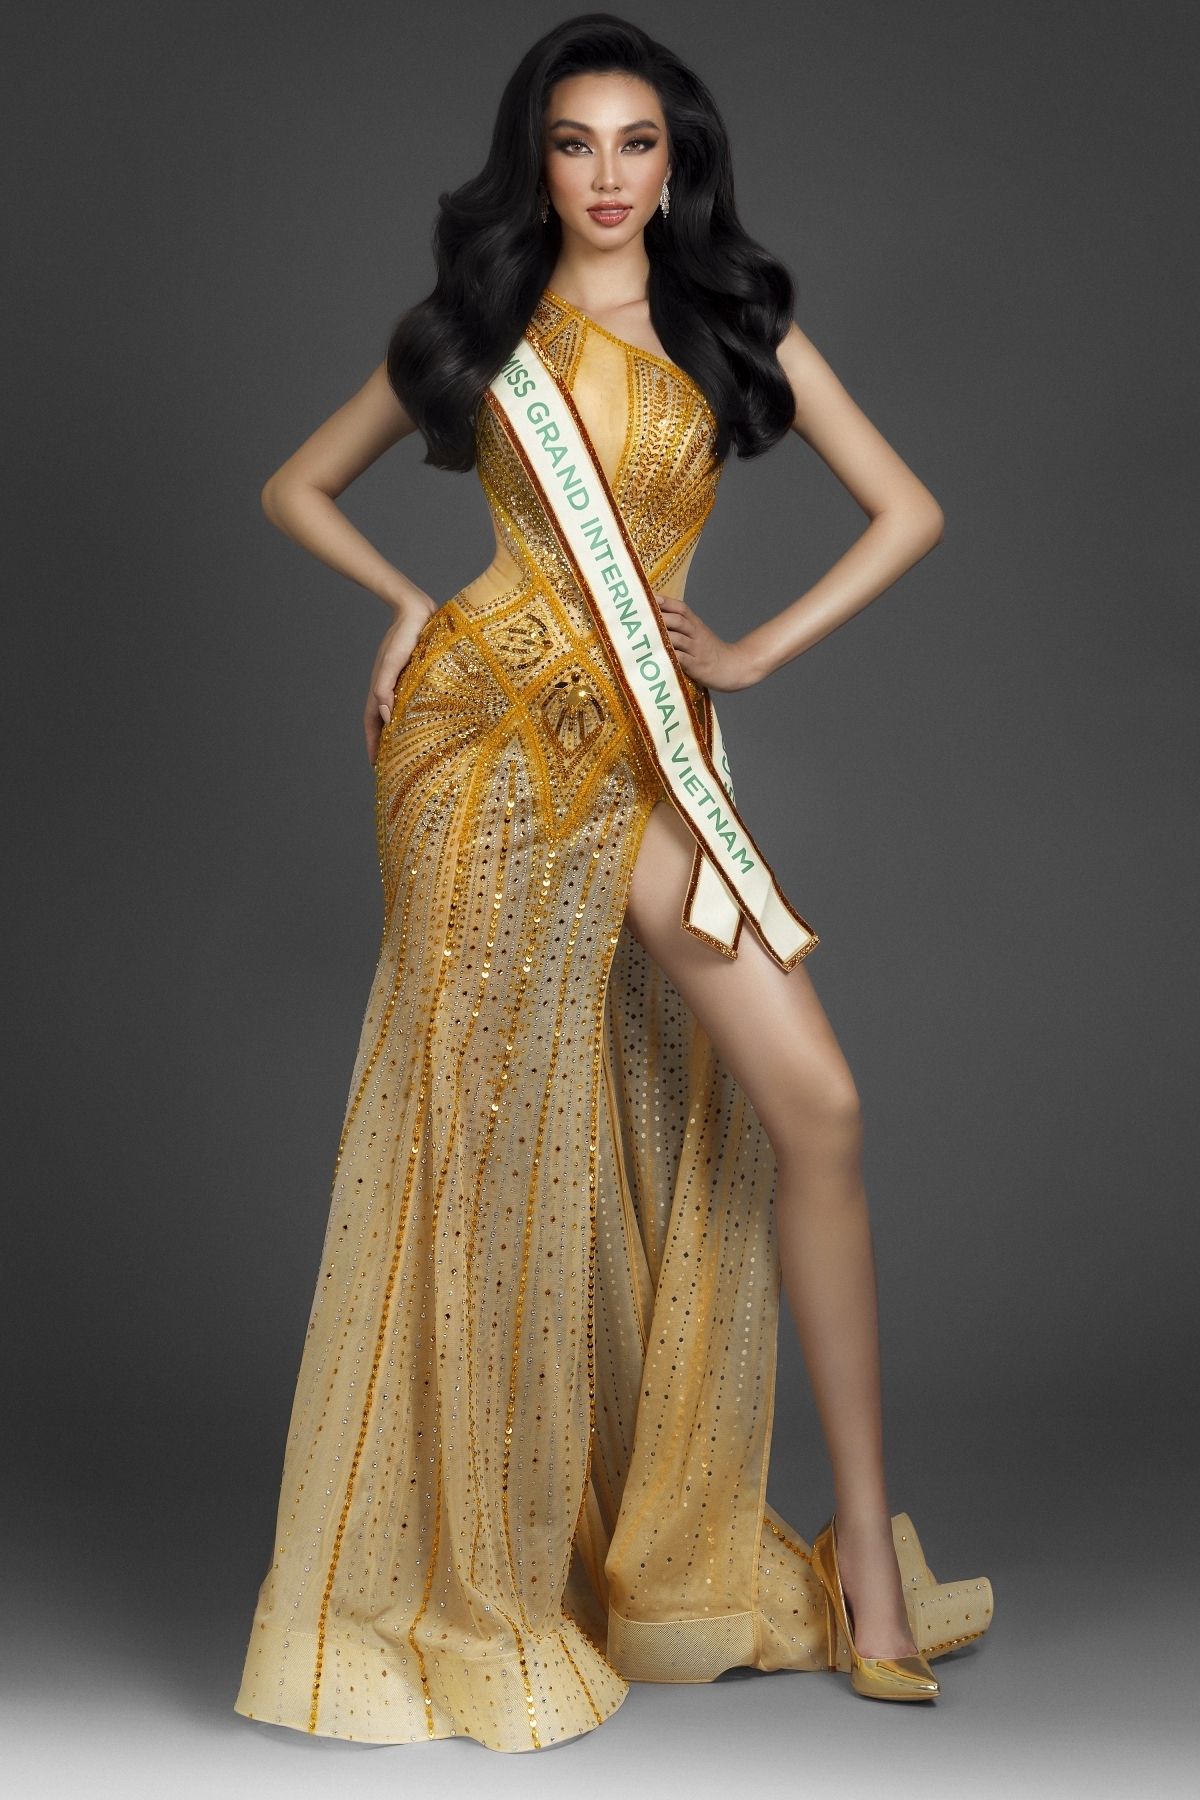 Tân Hoa hậu Hoà bình Myanmar 2021: Cao gần 1m80, mặt xinh, dáng thon - Ảnh 11